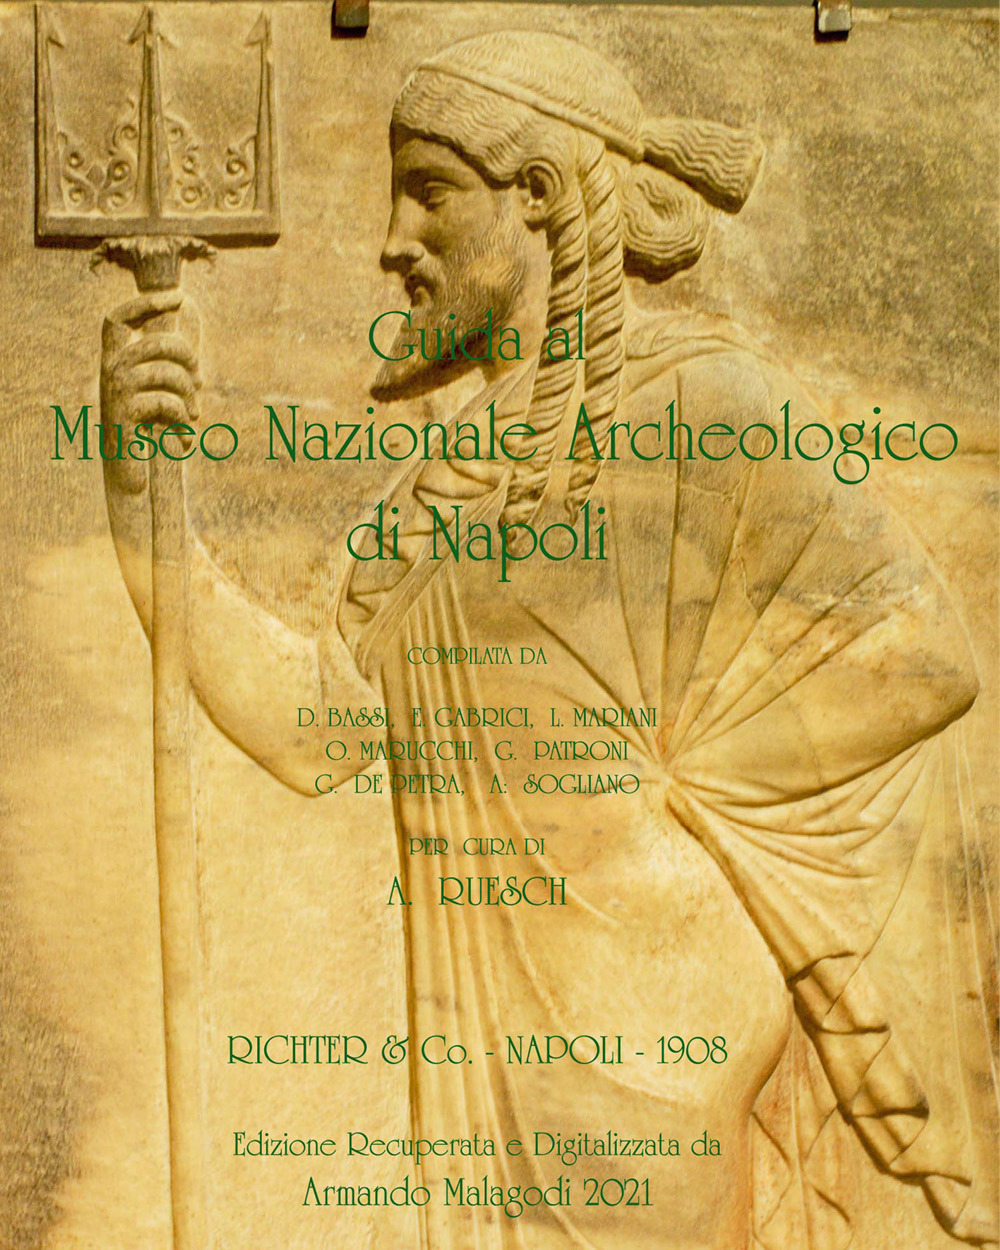 Libri Armando Malagodi - Guida Al Museo Nazionale Archeologico Di Napoli NUOVO SIGILLATO, EDIZIONE DEL 11/05/2021 SUBITO DISPONIBILE